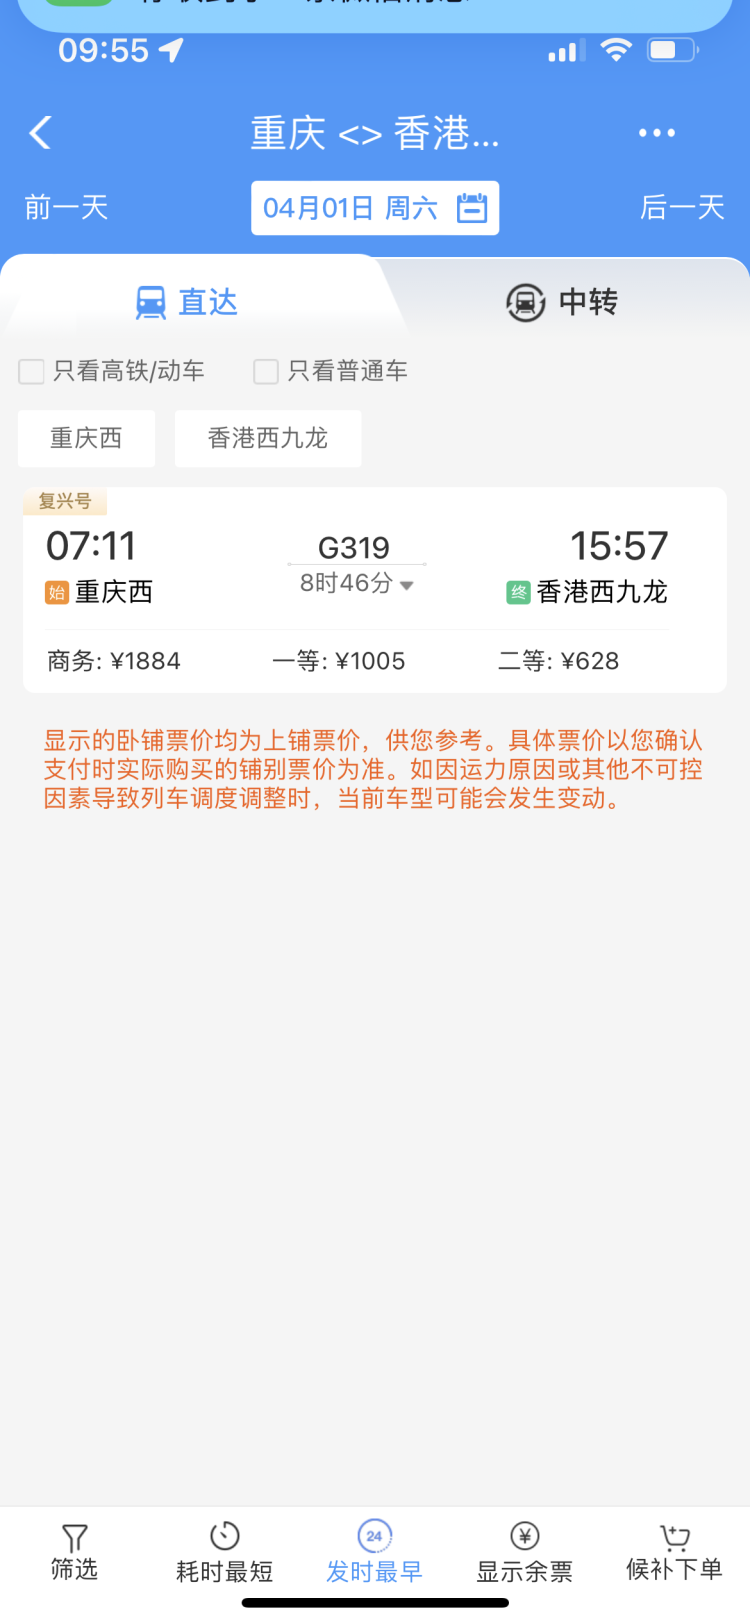 重庆到香港直达高铁车票开售，全程运行时间8小时46分钟，二等座票价628元